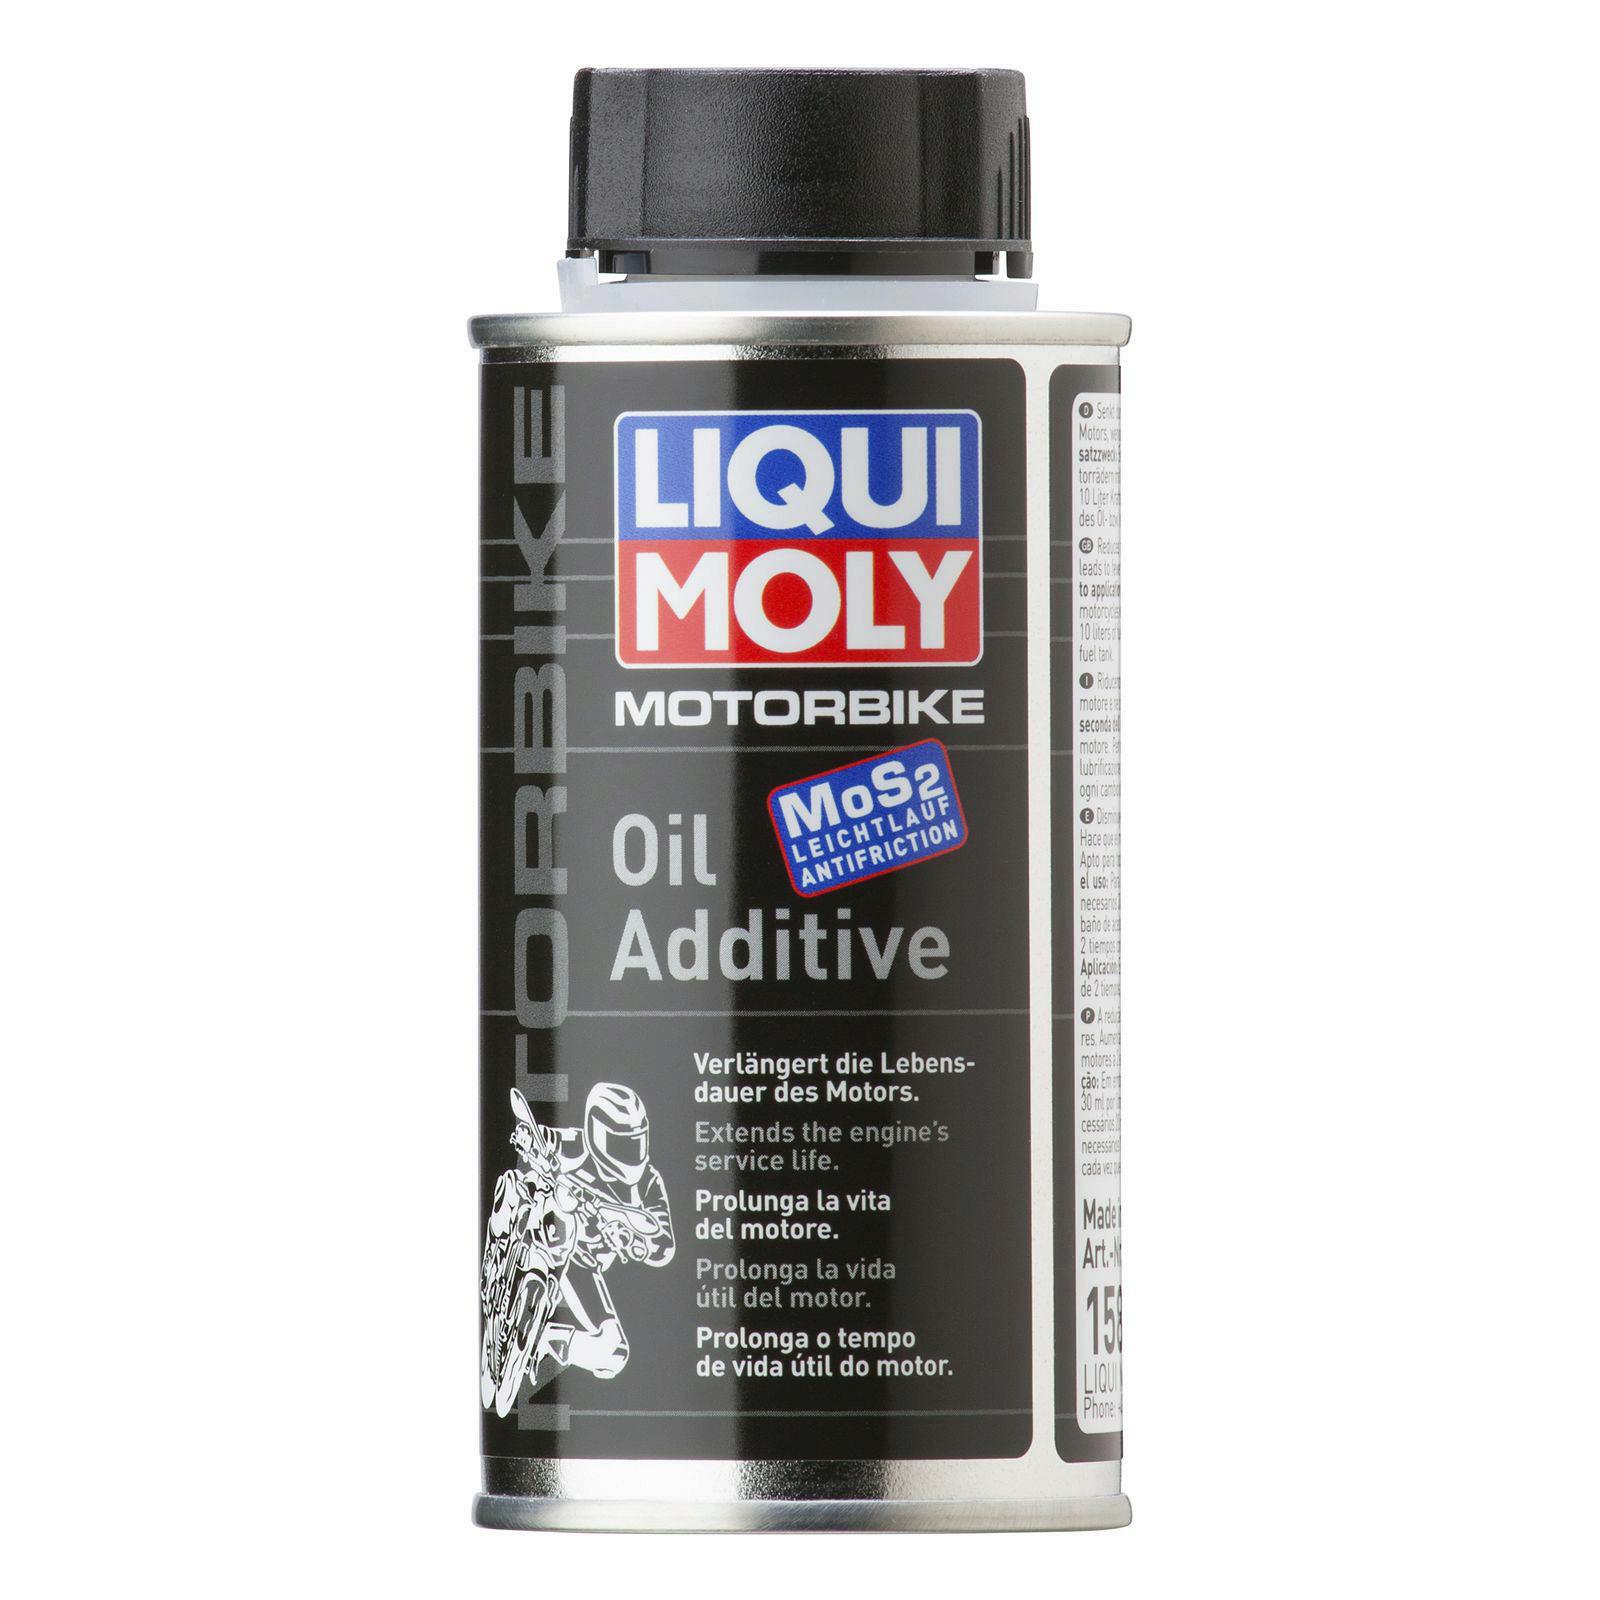 Моторные масла с молибденом: Моторное масло с молибденом, что это такое?